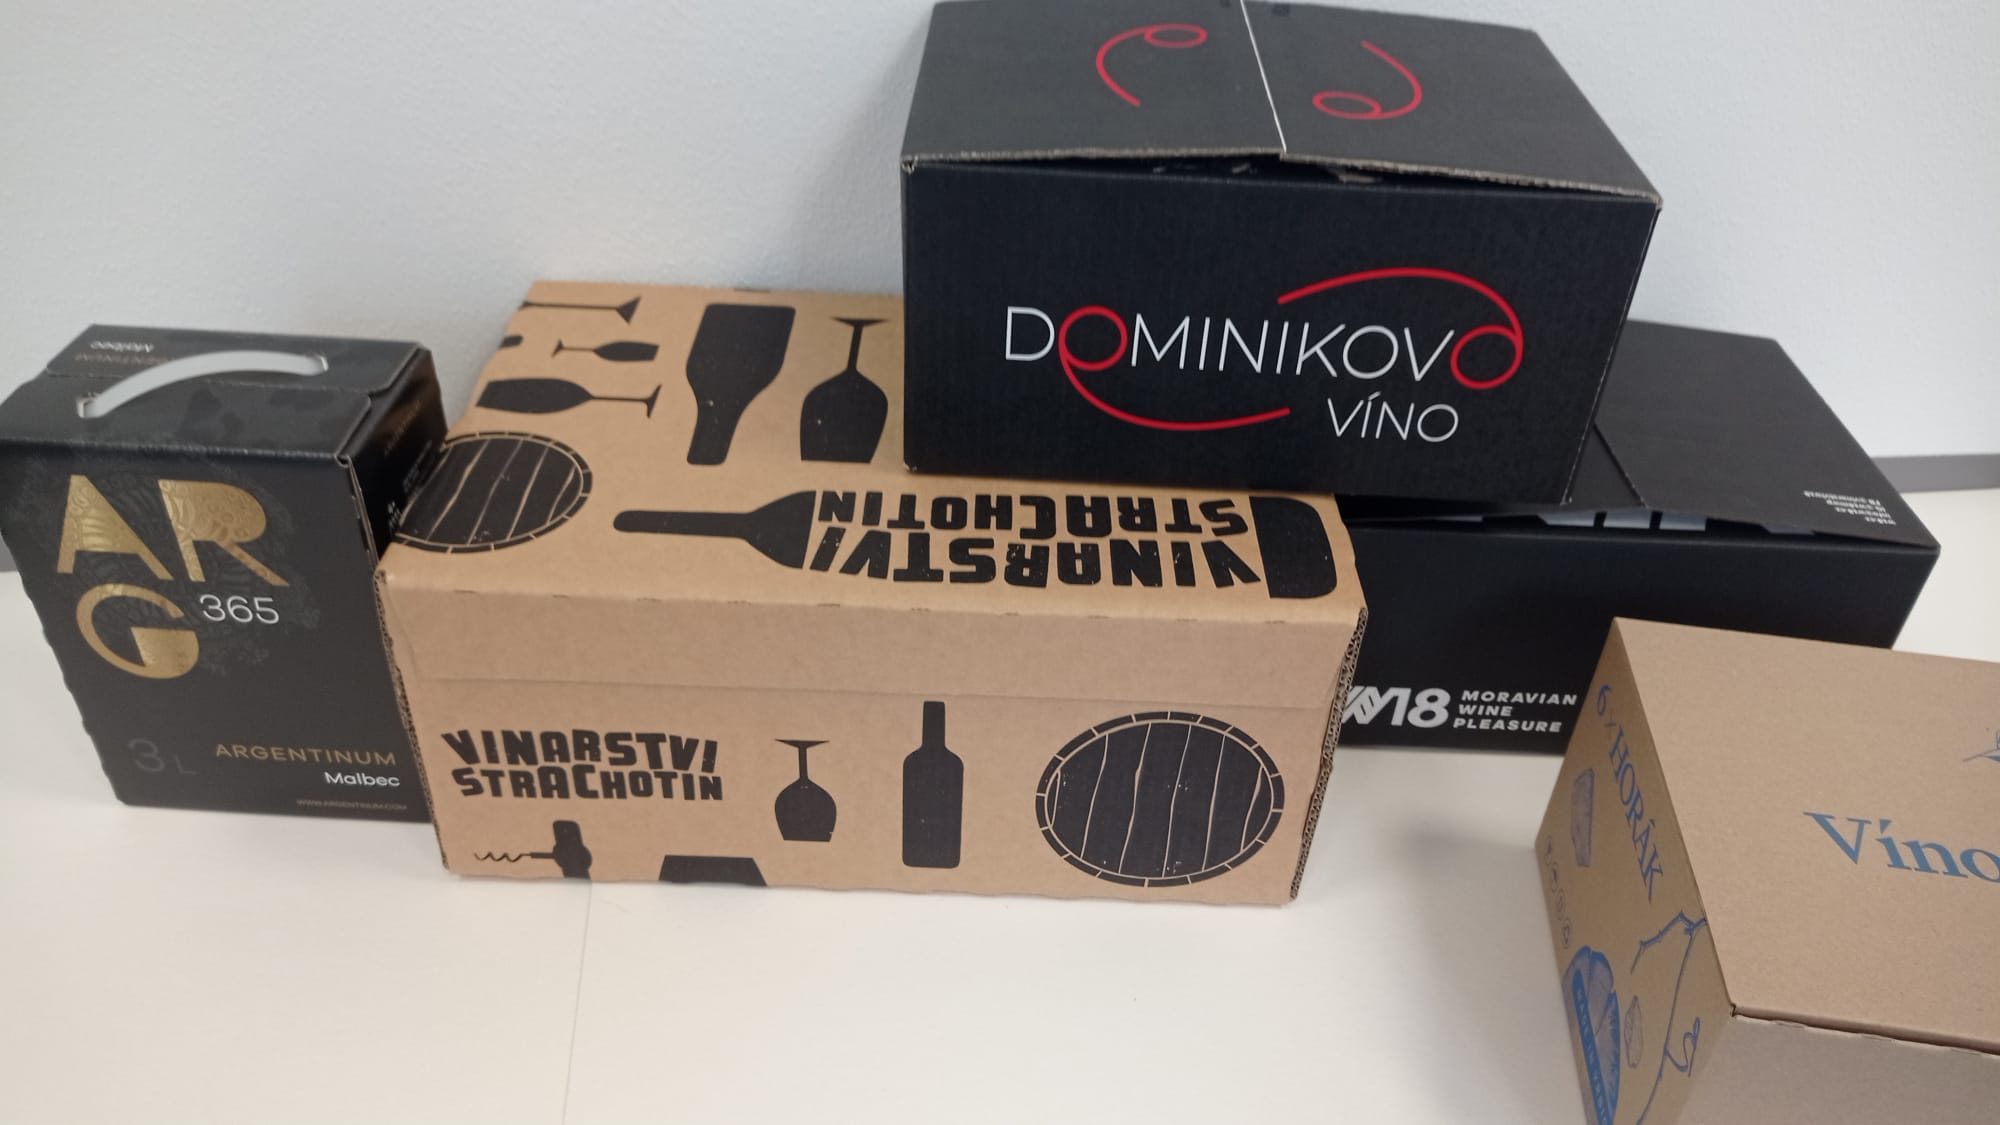 Obaly, krabice a tašky na víno v rôznych prevedeniach – bohatý výber na e-shope aj v predajniach